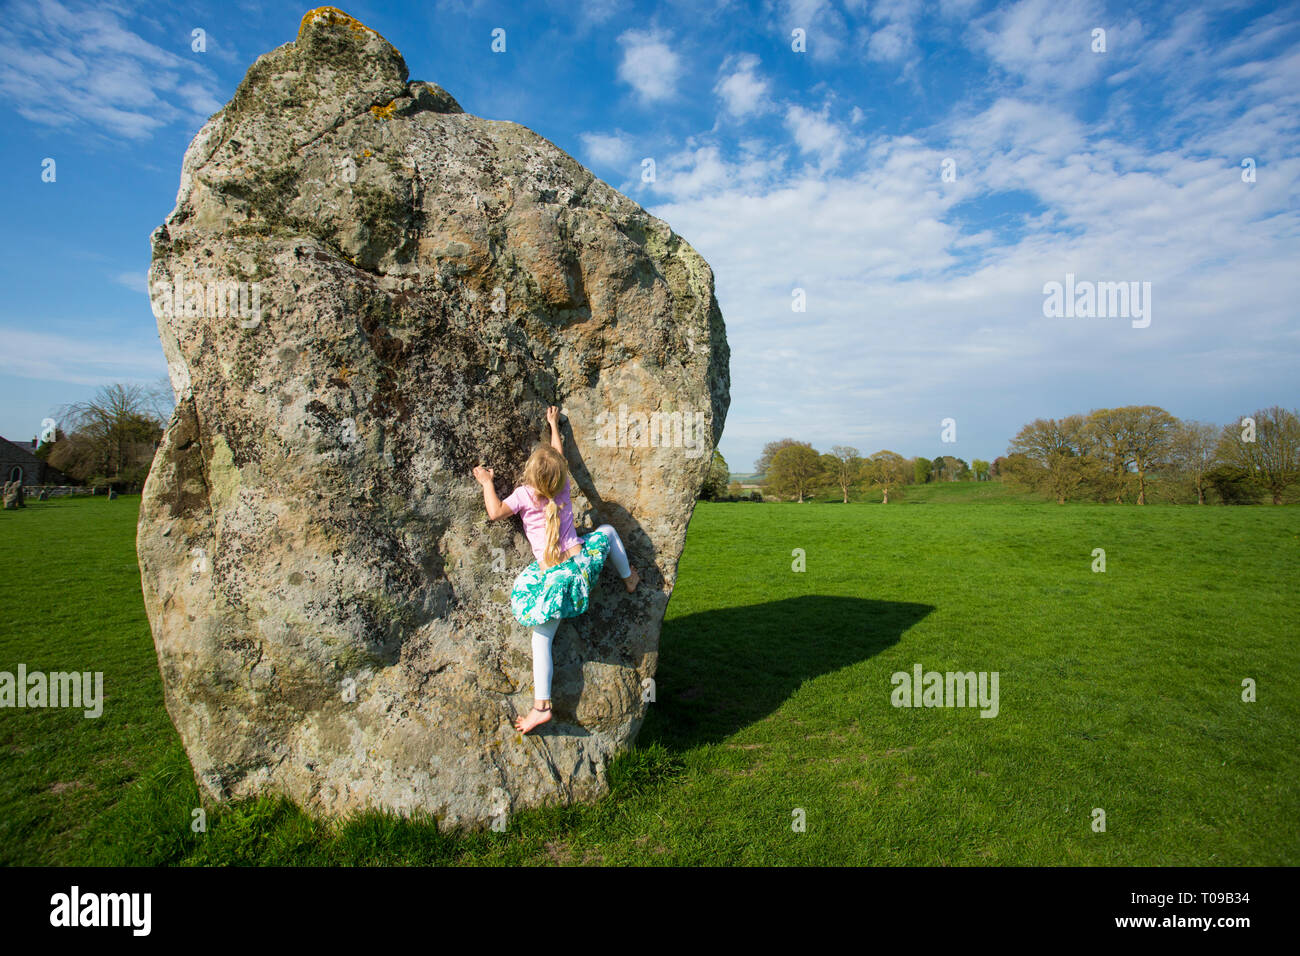 La Grande-Bretagne, l'Angleterre, Avebury Stone Circle. Young Girl climbing un énorme mégalithe néolithique. M. Banque D'Images